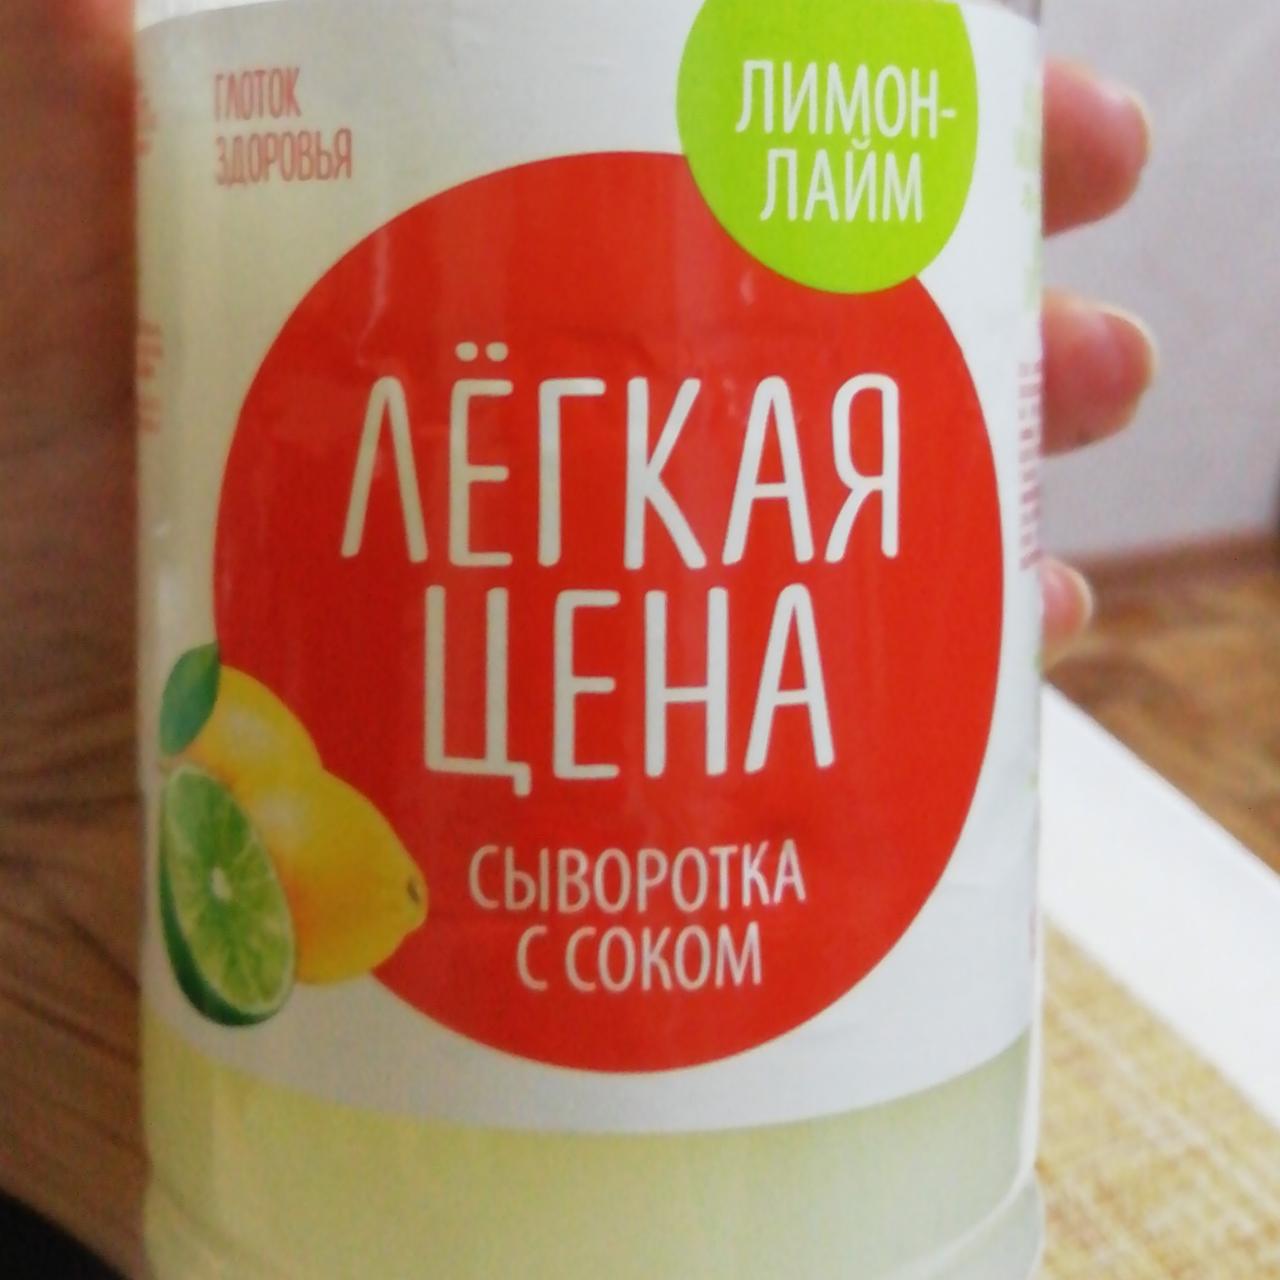 Фото - сыворотка с соком лимон-лайм Лёгкая цена